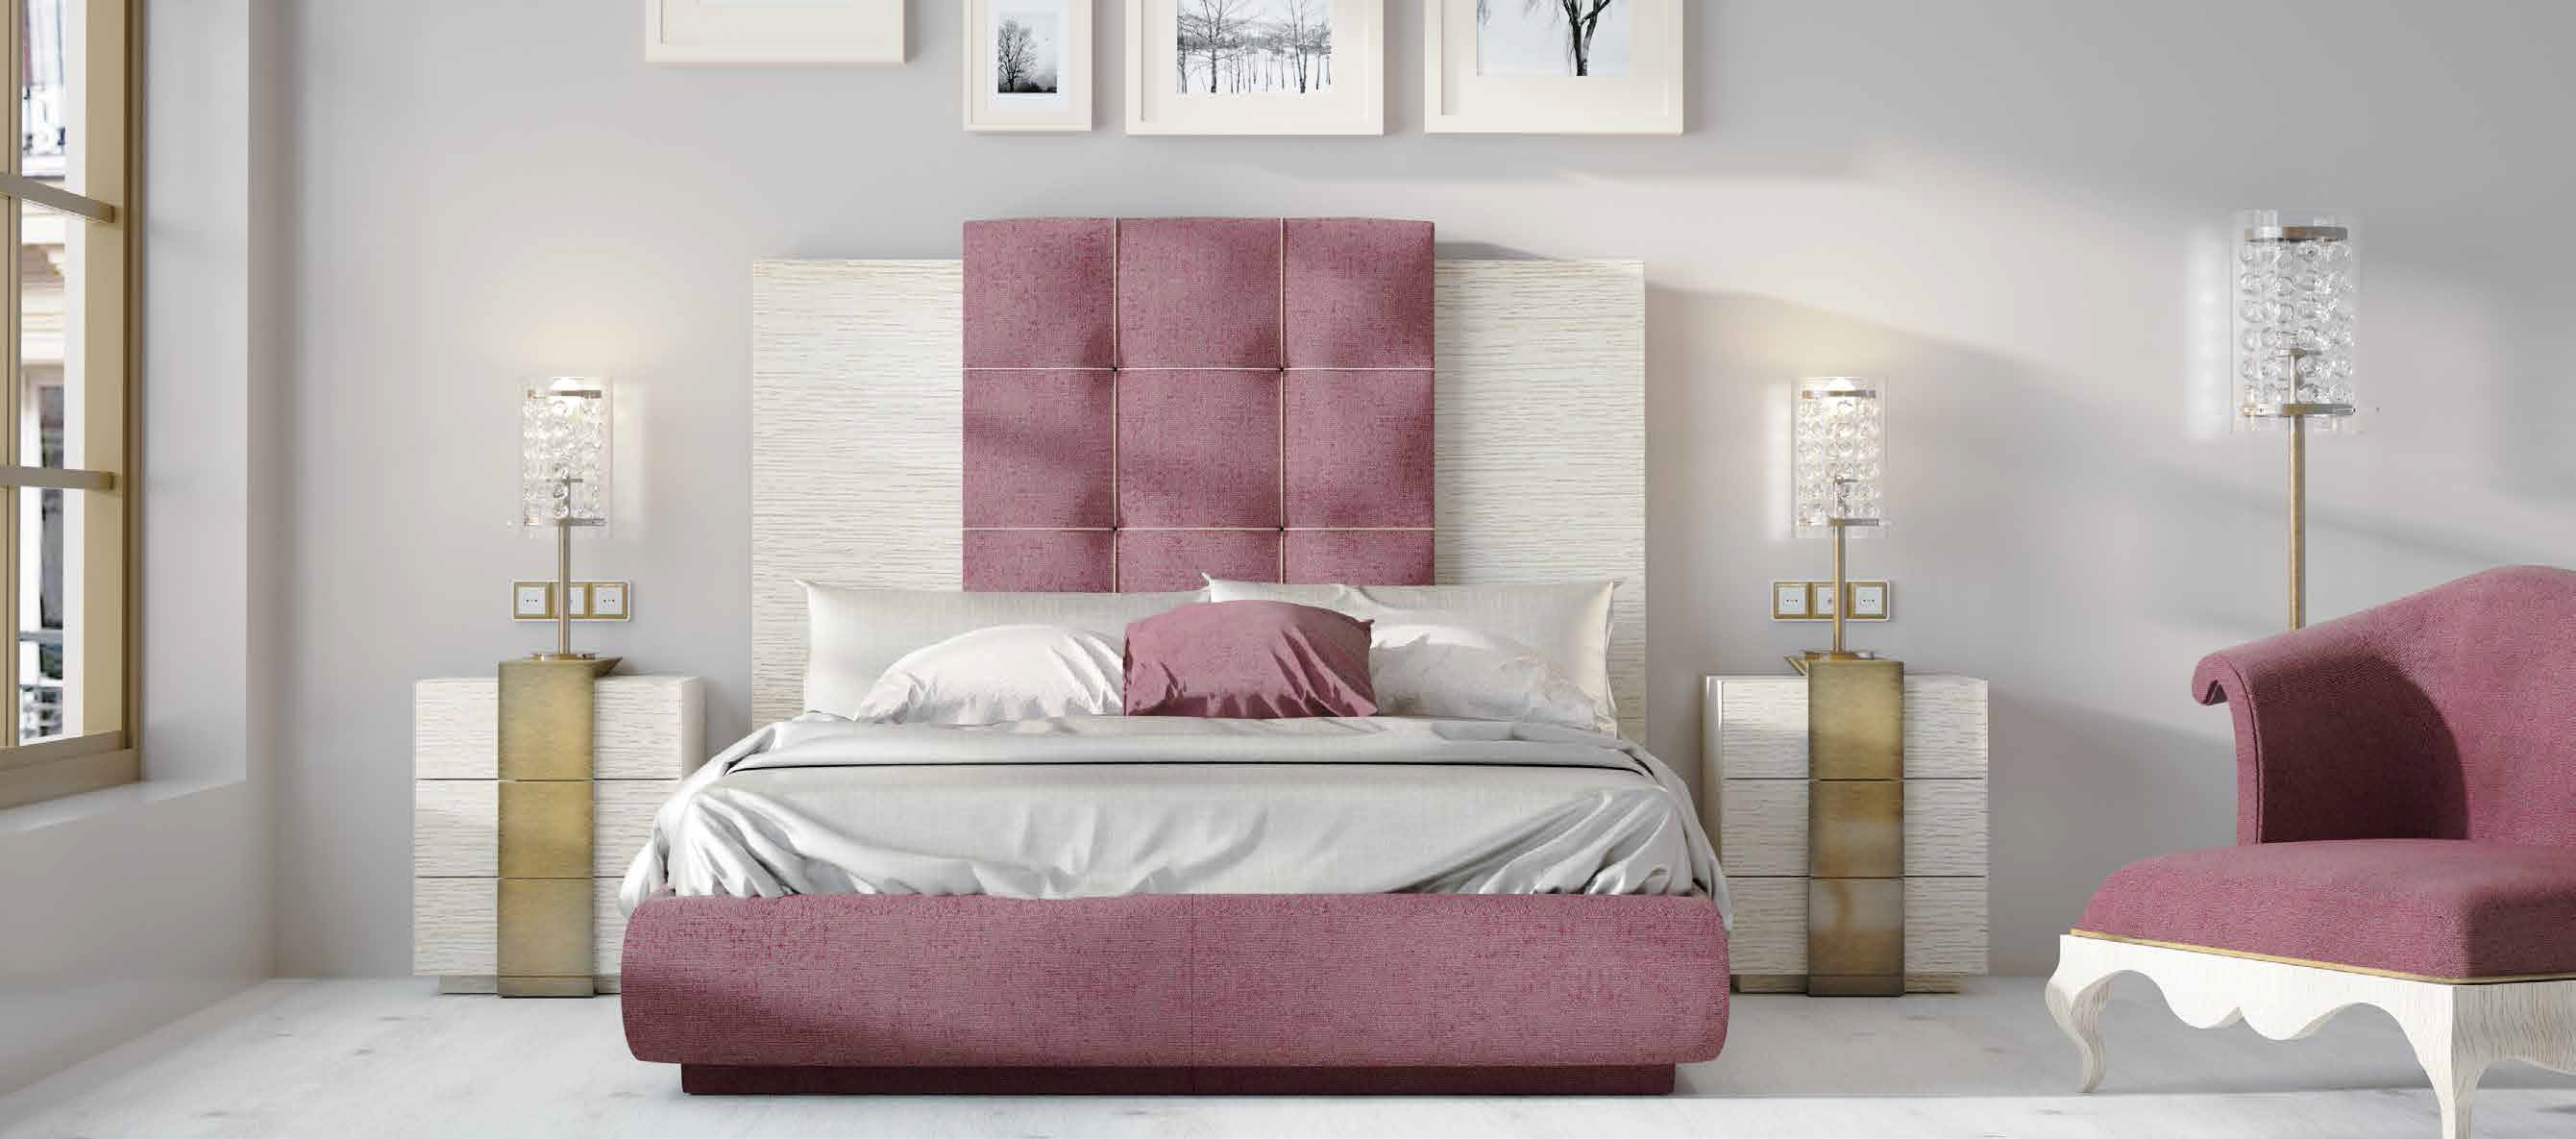 Brands Franco Furniture Avanty Bedrooms, Spain DOR 11